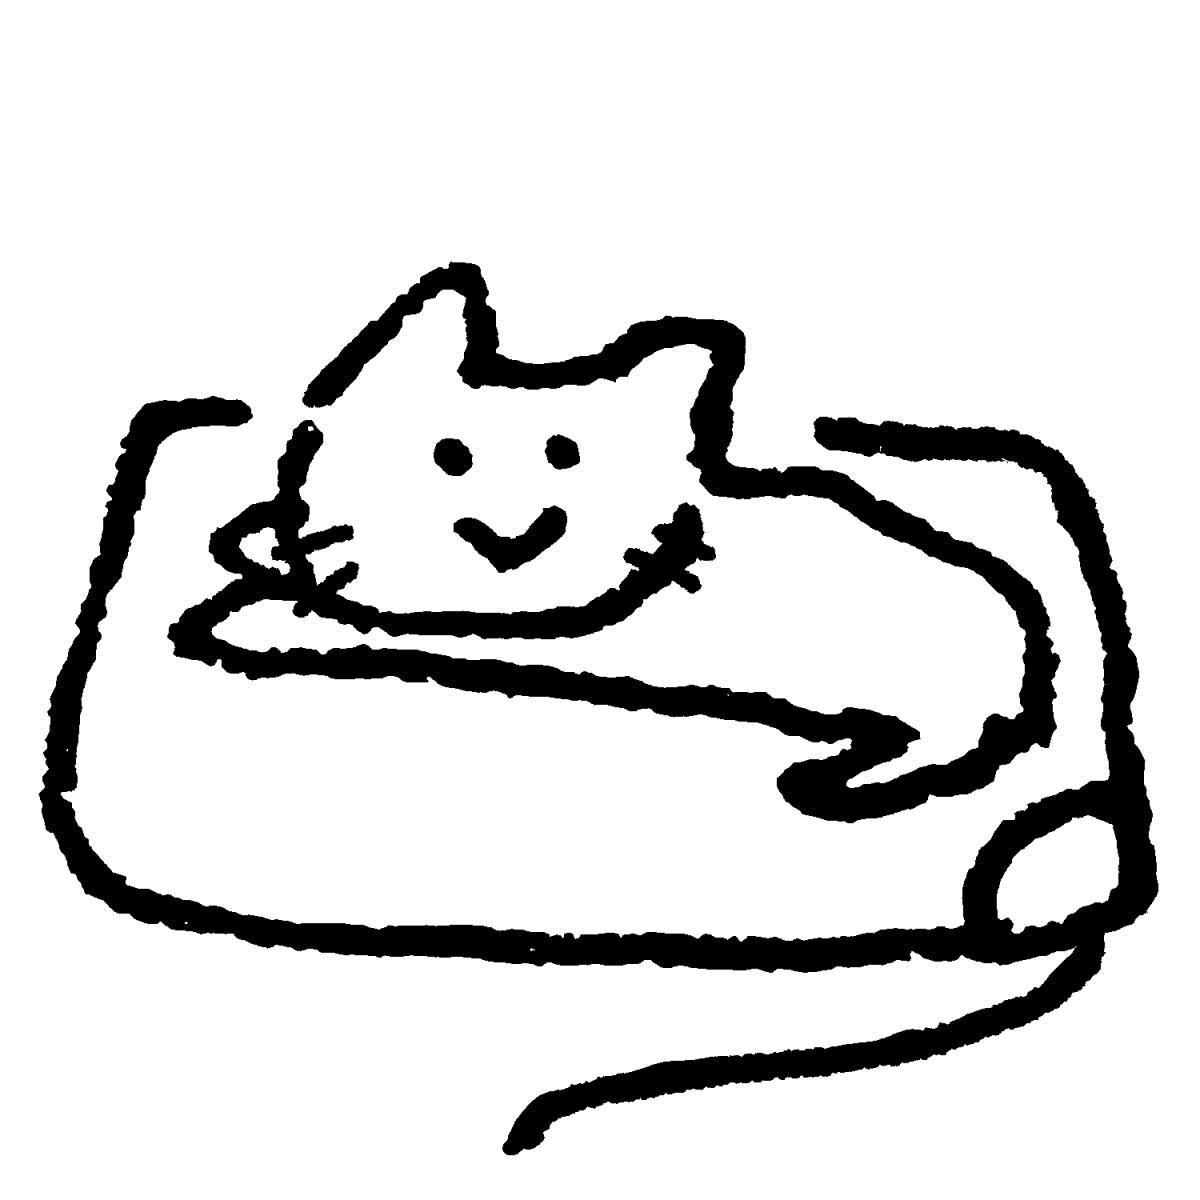 ホットカーペットと猫のイラスト / Hot carpets and cats Illustration